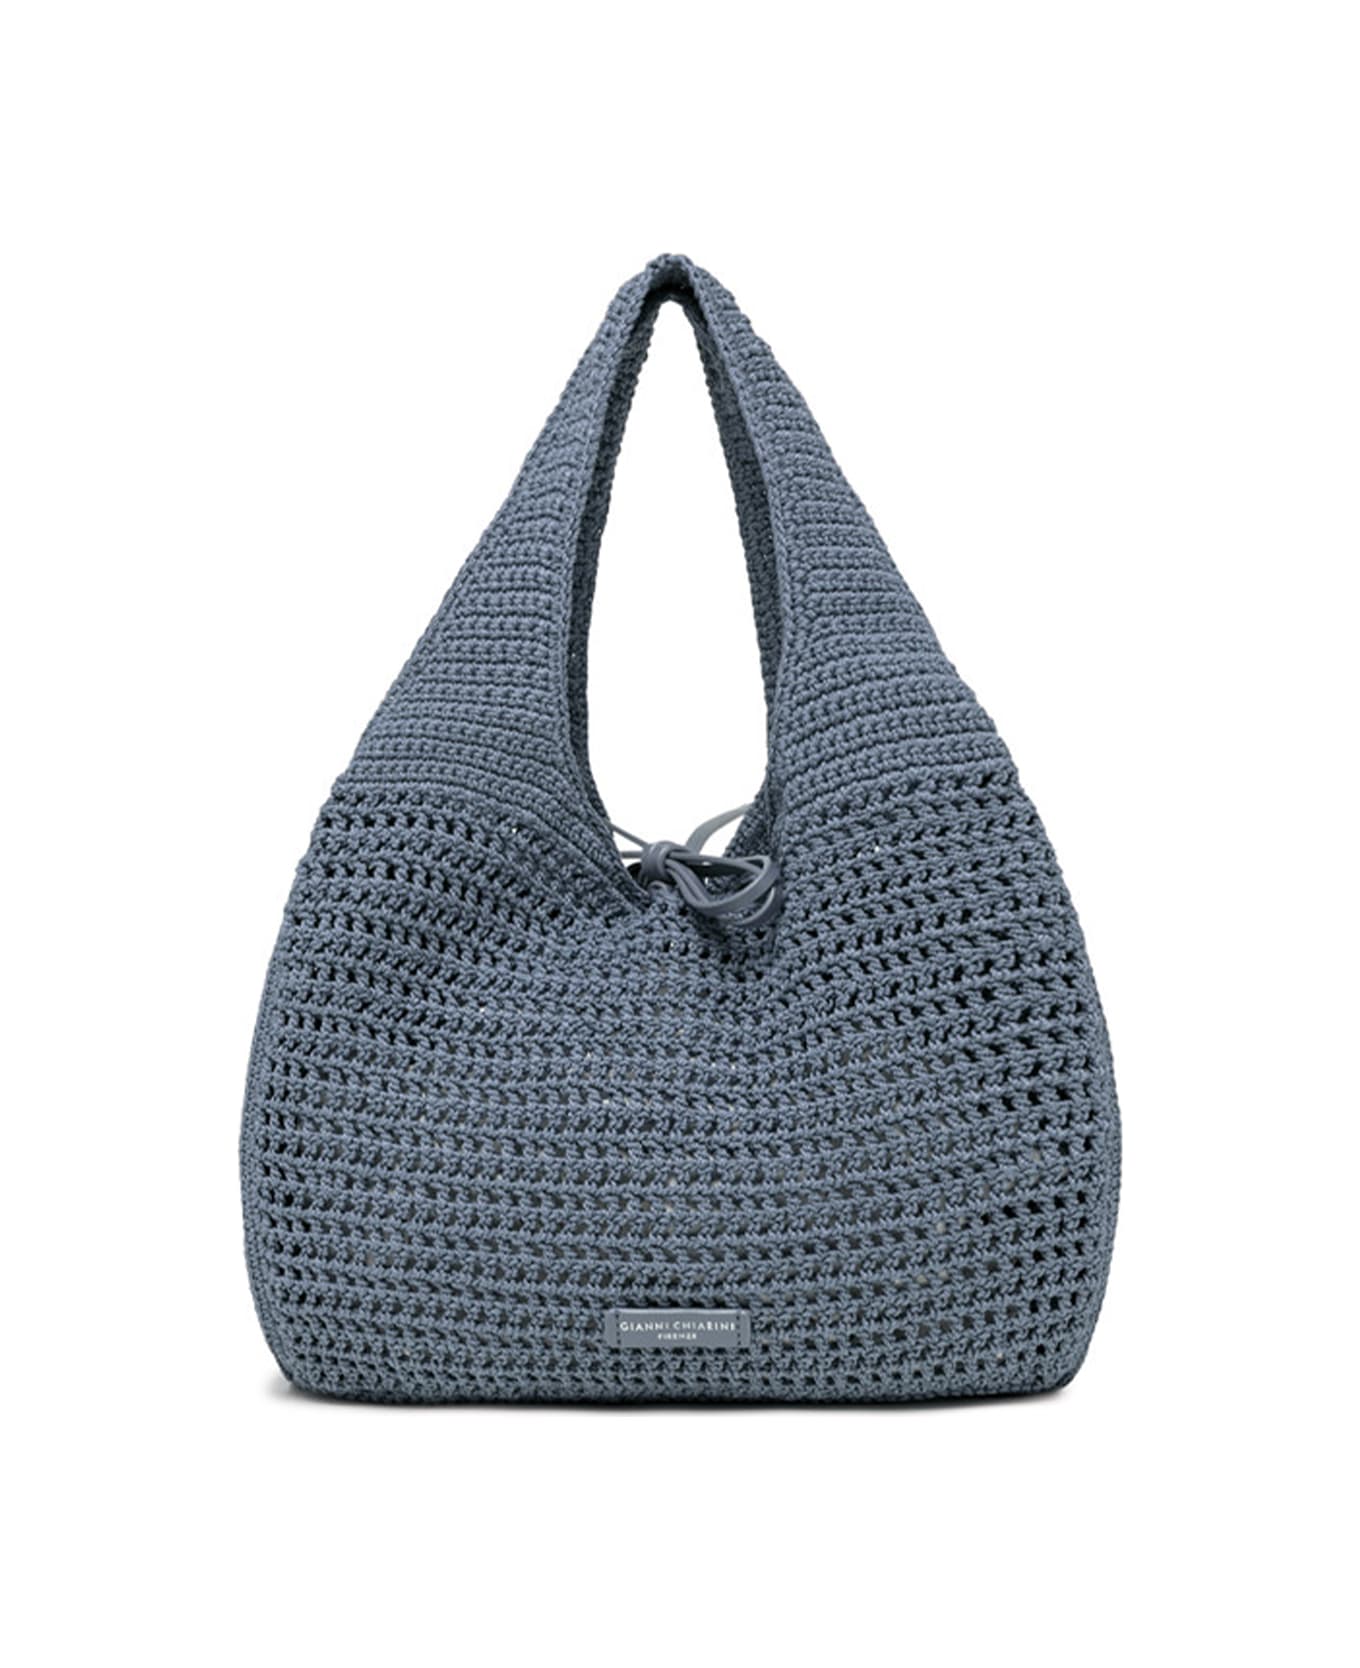 Gianni Chiarini Euforia Bluette Shopping Bag In Crochet Fabric - ARTICO